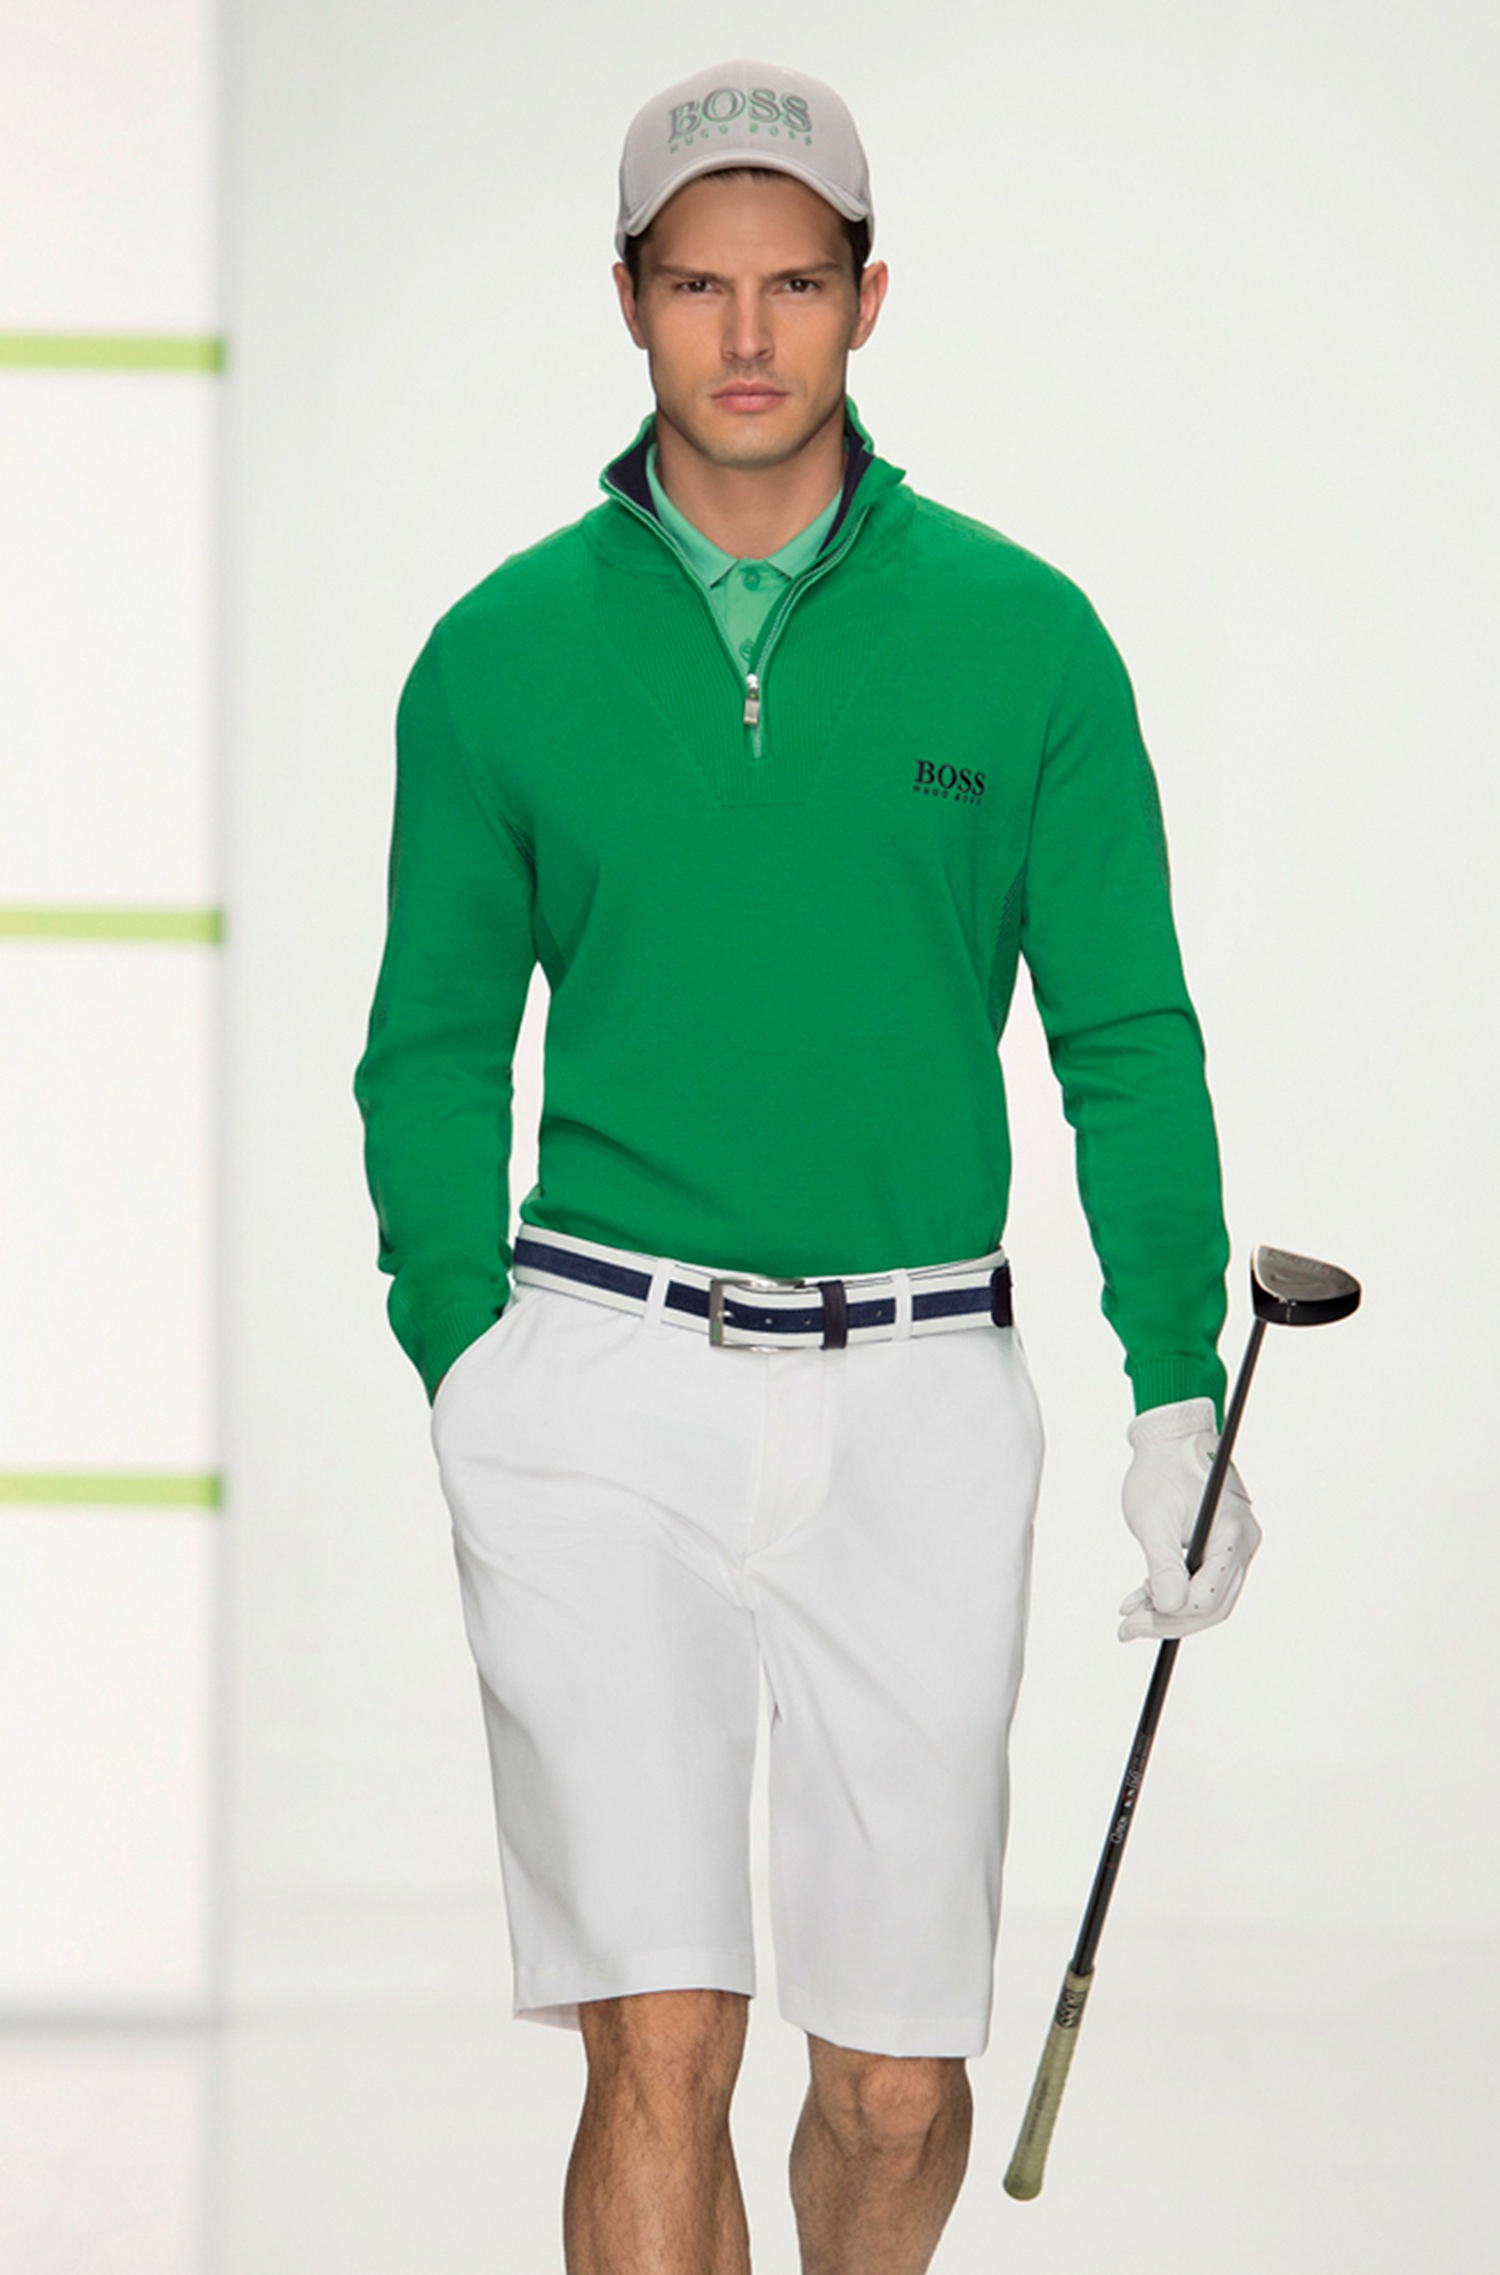 BOSS Green Golf Sweater Zelchior Pro Waterrepellent in Green for Men - Lyst